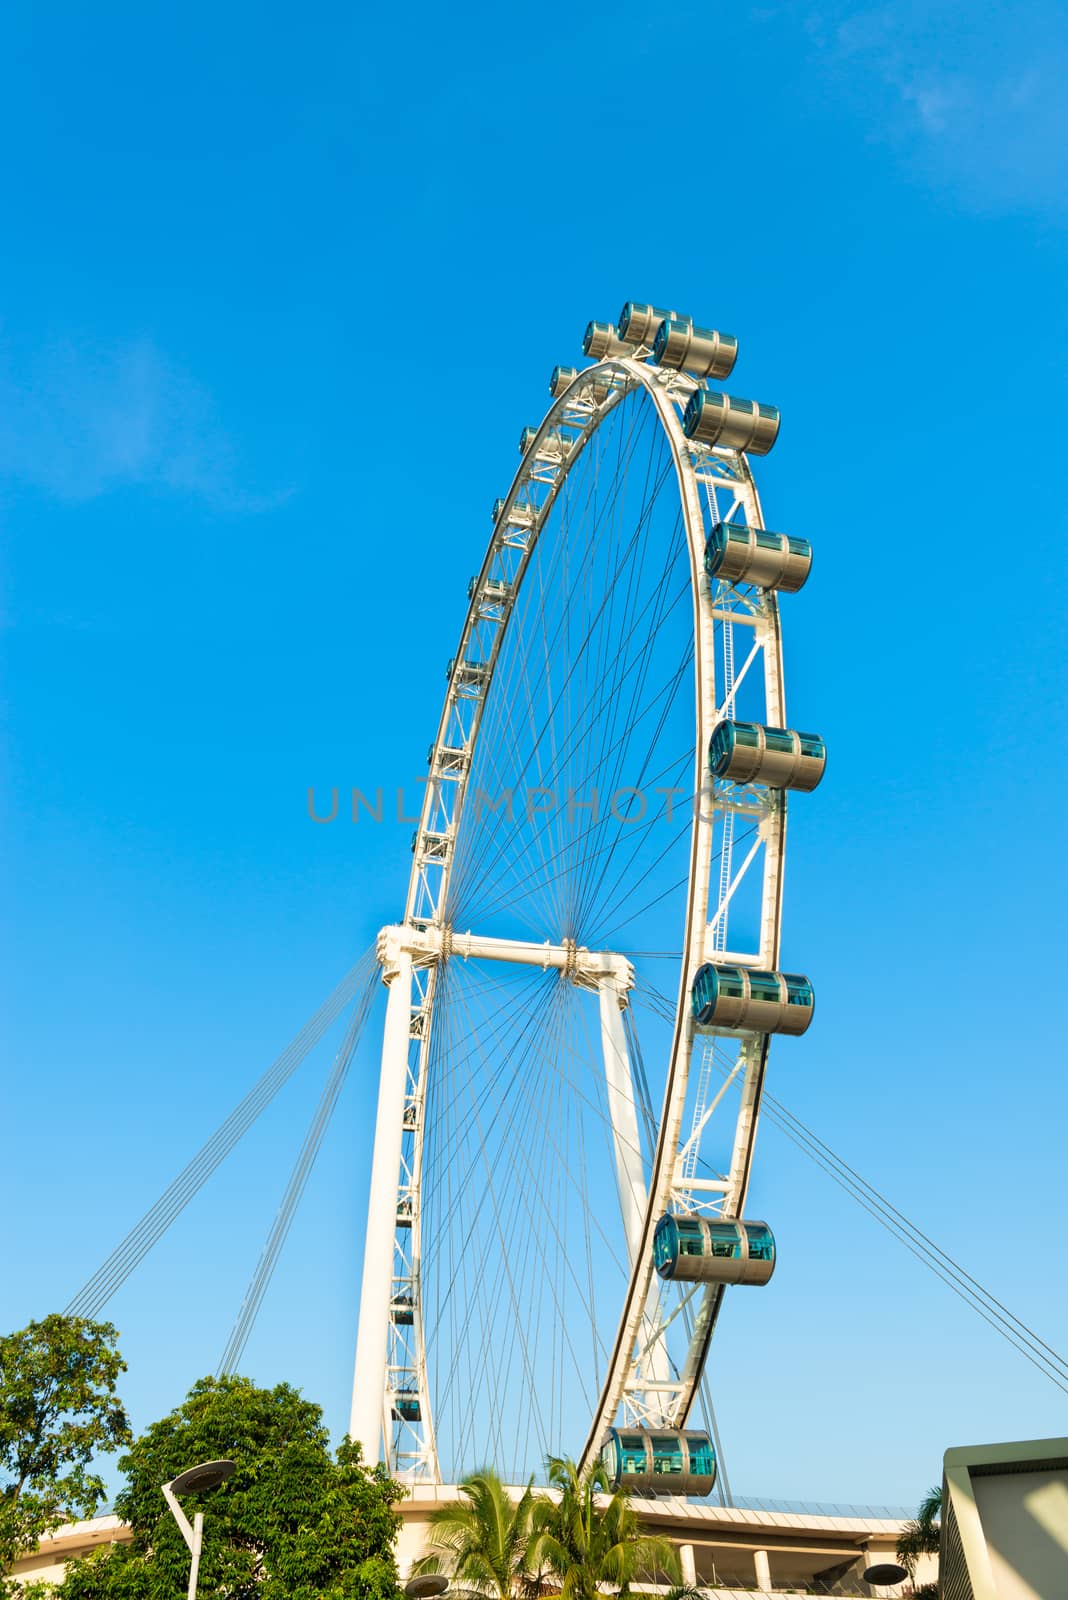 Ferris wheel under blue sky by iryna_rasko